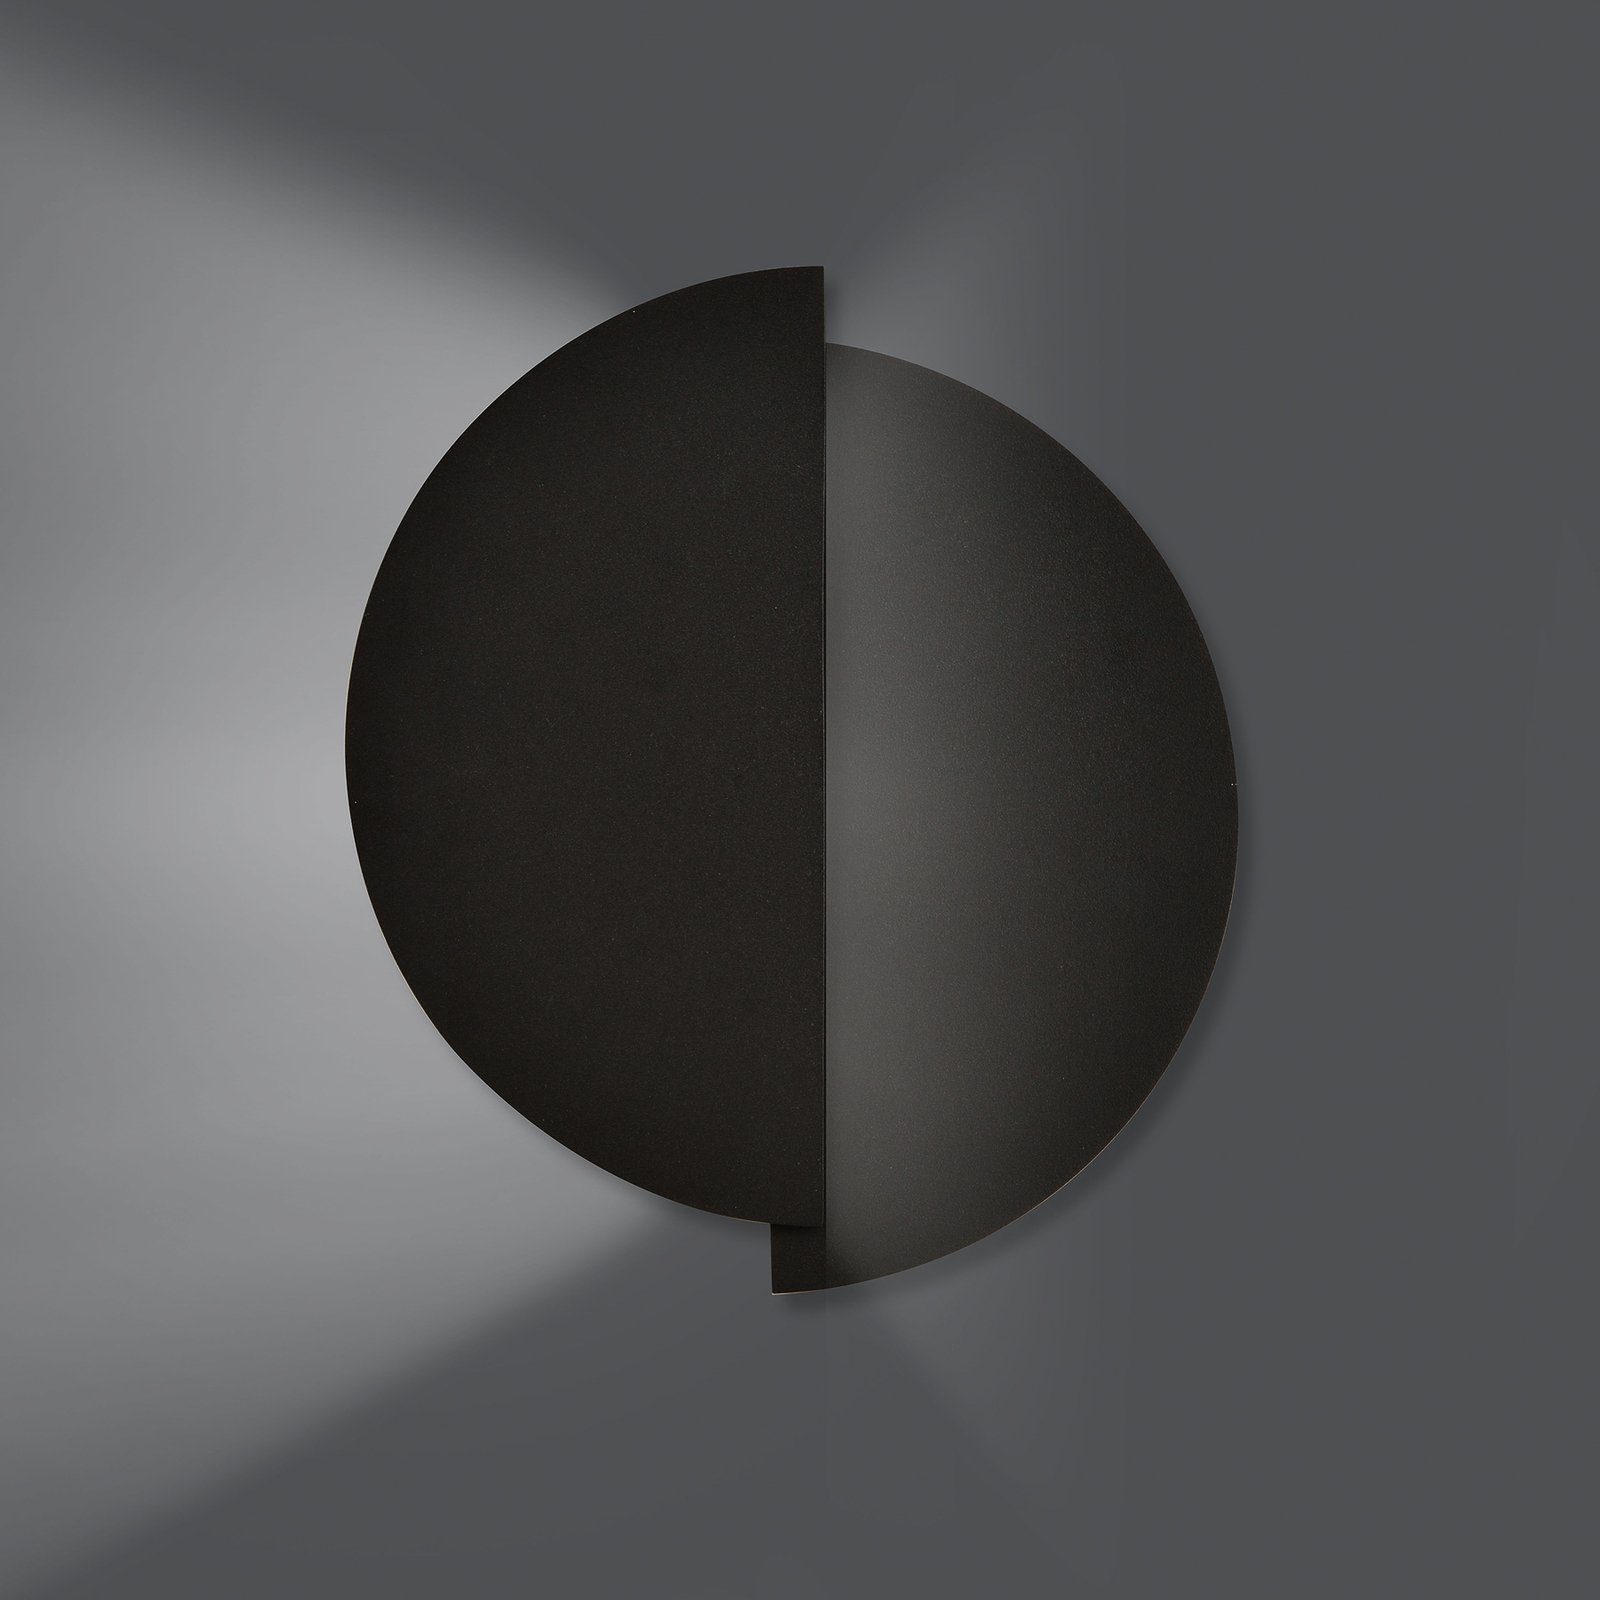 Stenska svetilka Form 9, 28 cm x 32 cm, črna